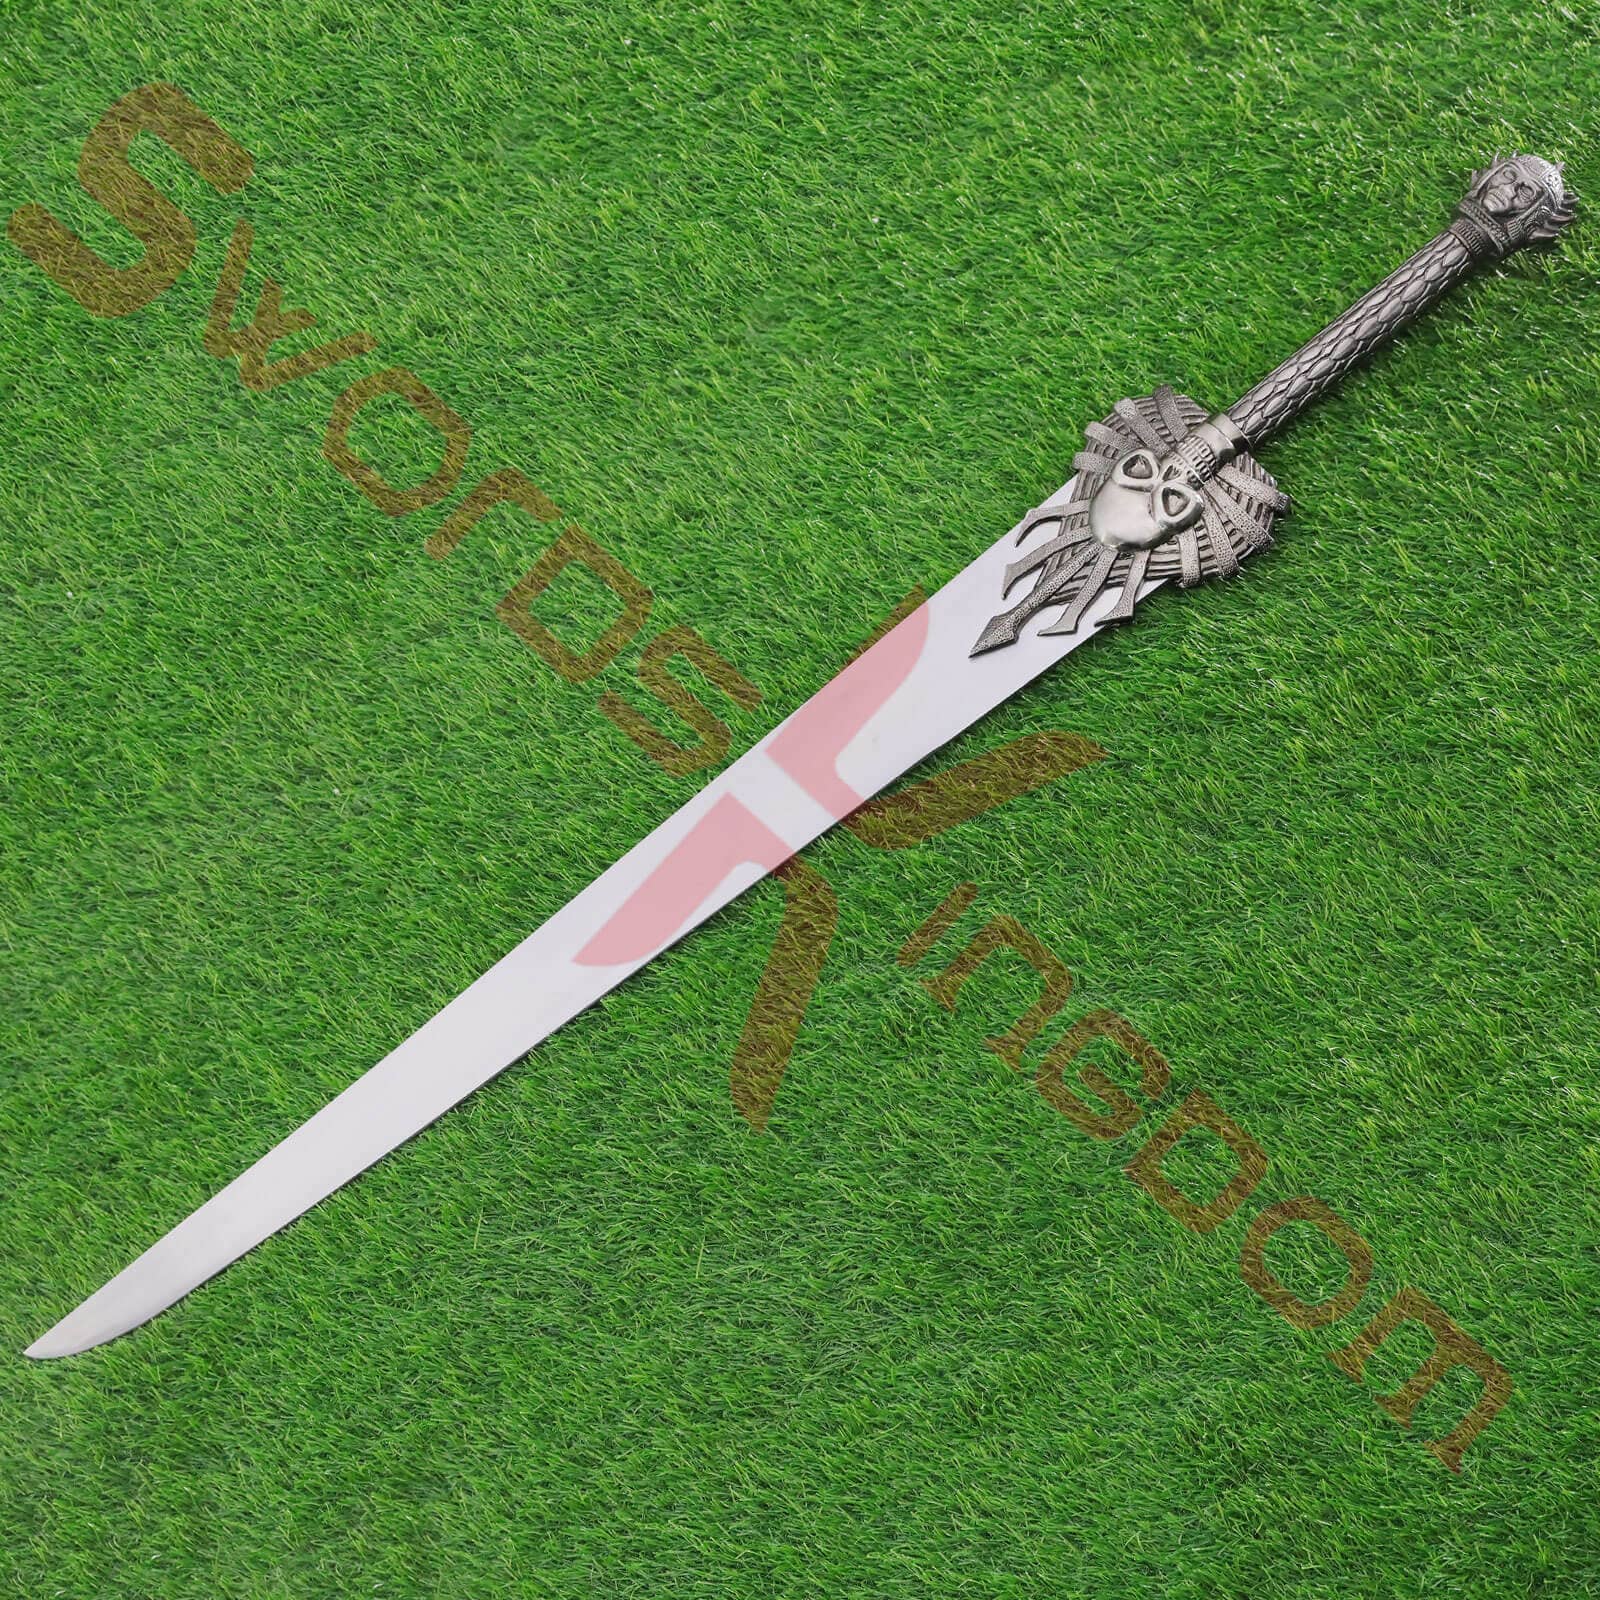 final fantasy x swords